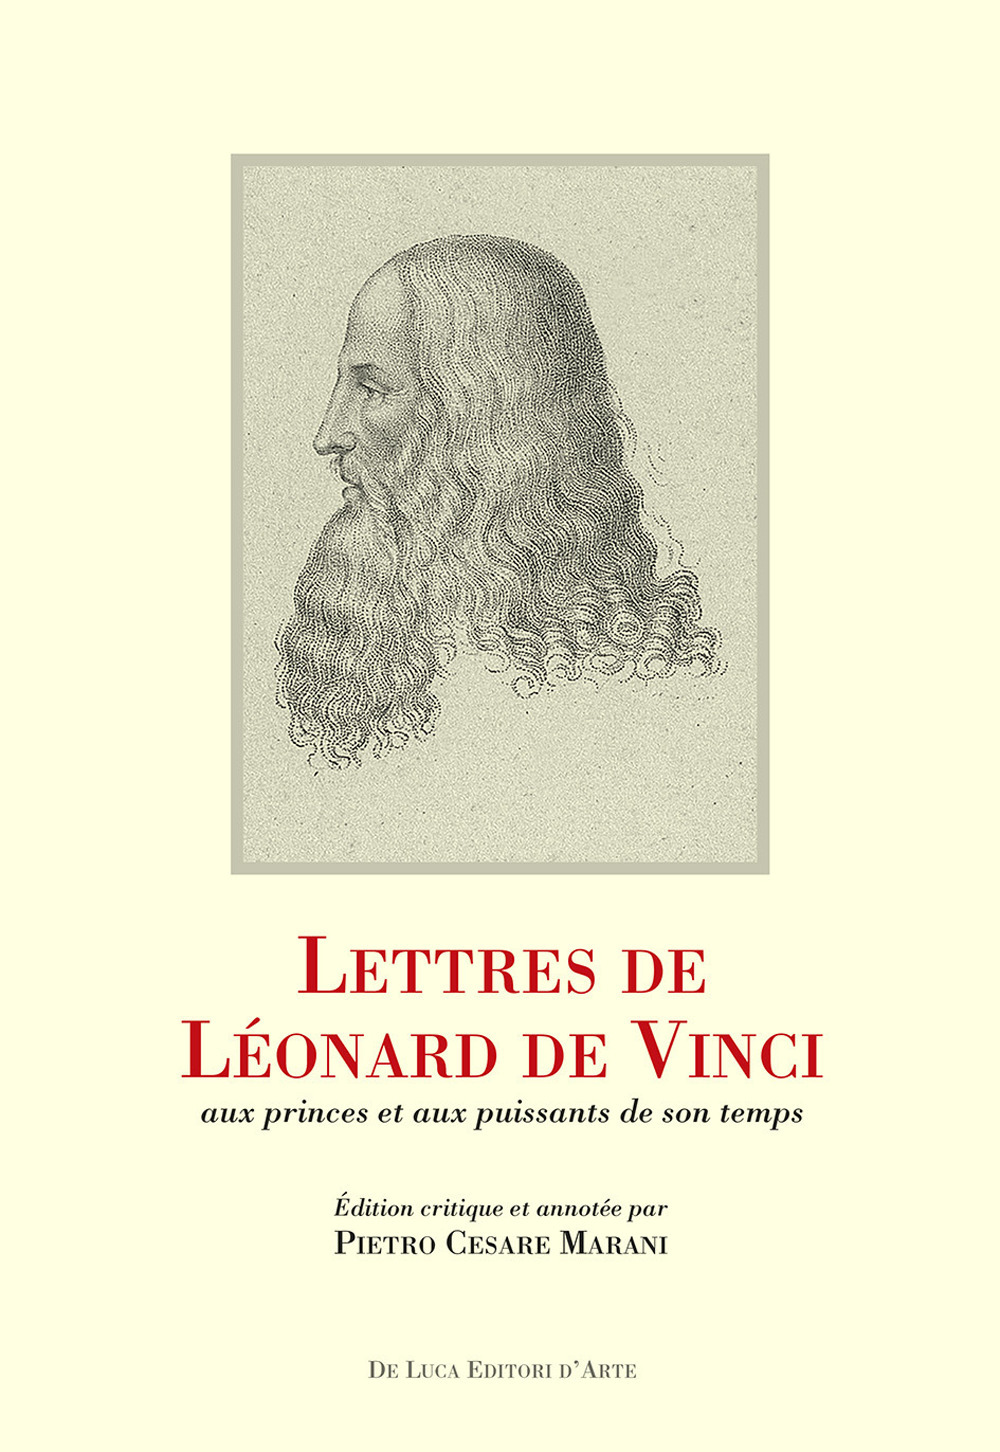 Lettres de Léonard de Vinci aux princes et aux puissants de son temps